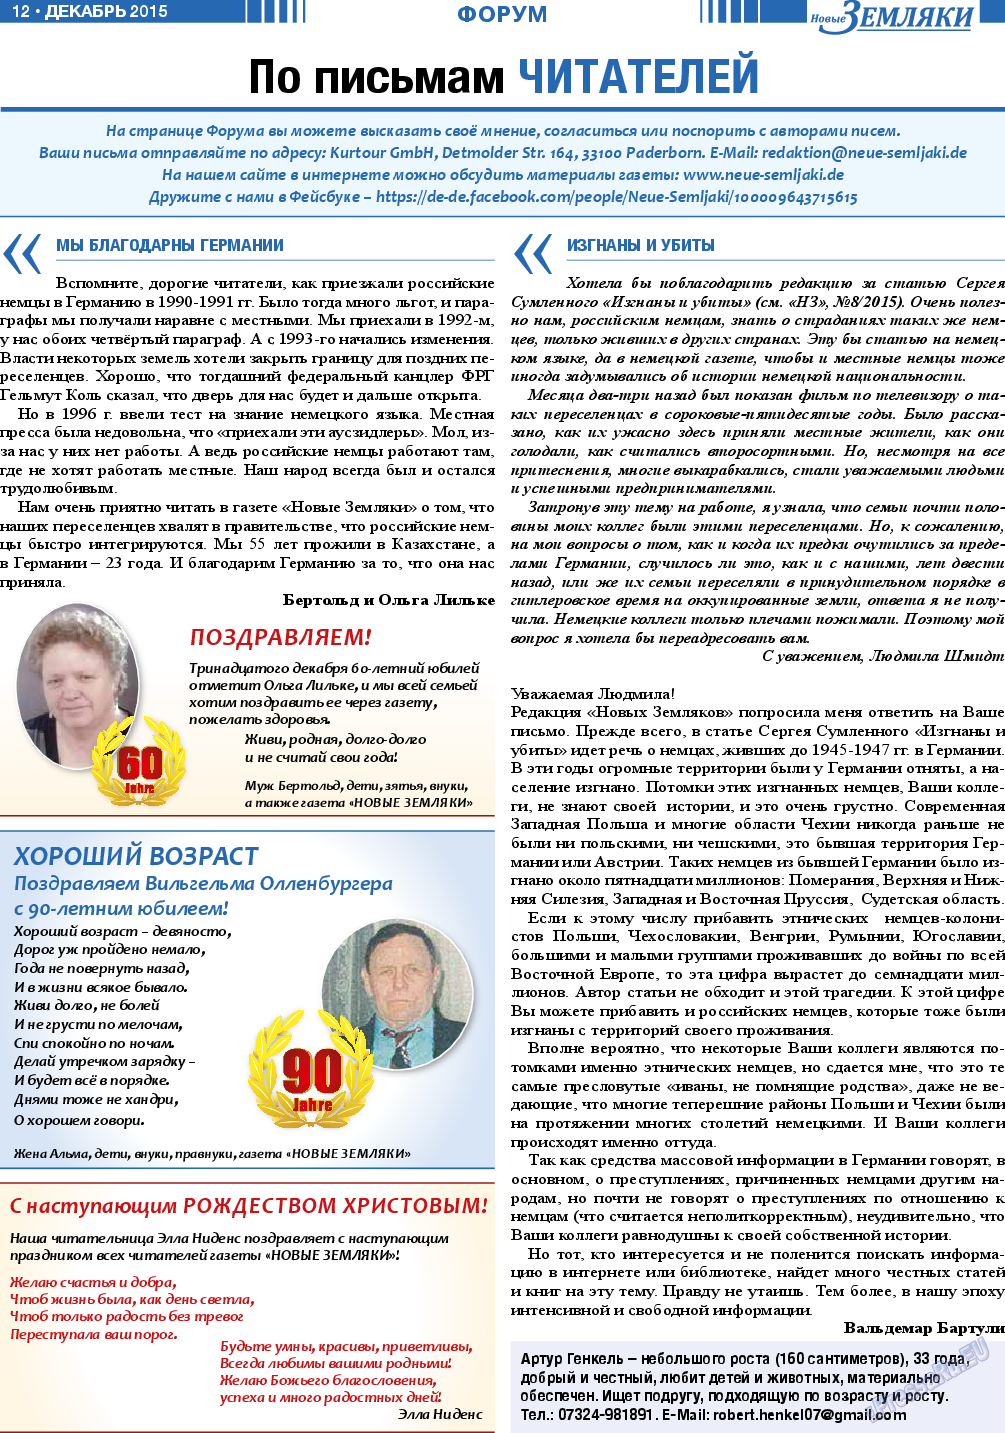 Новые Земляки, газета. 2015 №12 стр.12